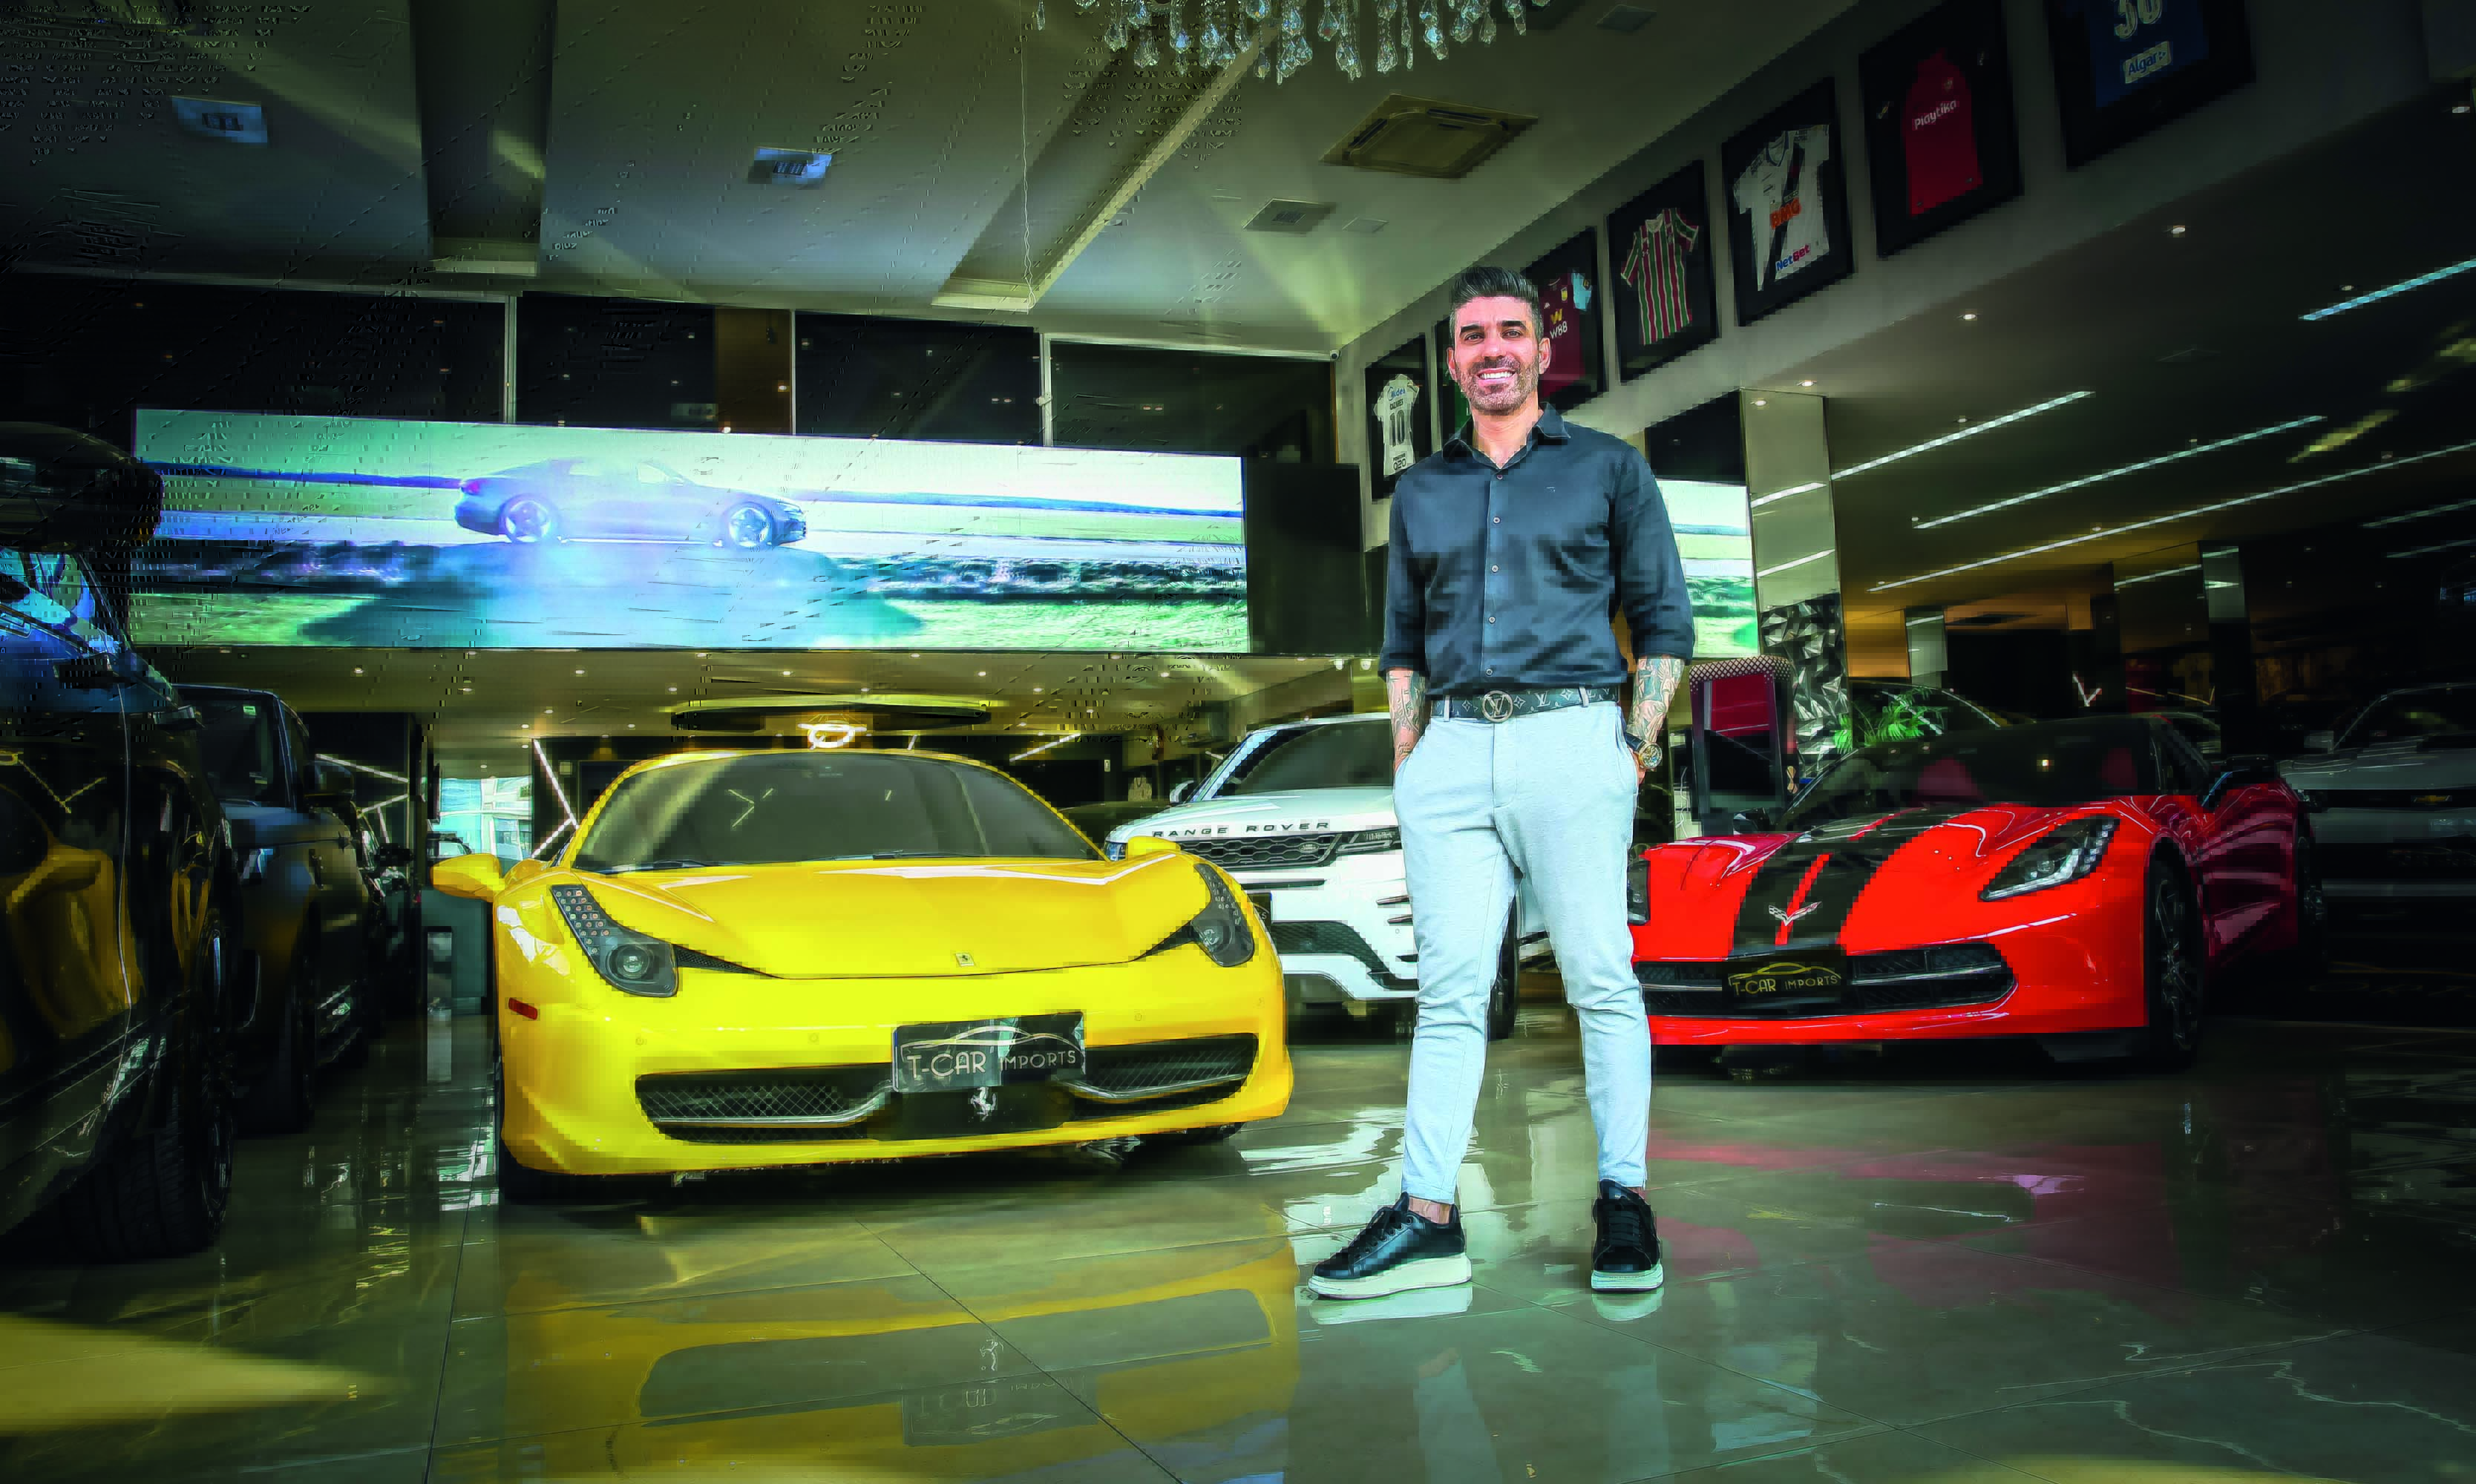 Imagem mostra homem em salão com diversos carros de luxo, brancos, amarelos e vermelhos